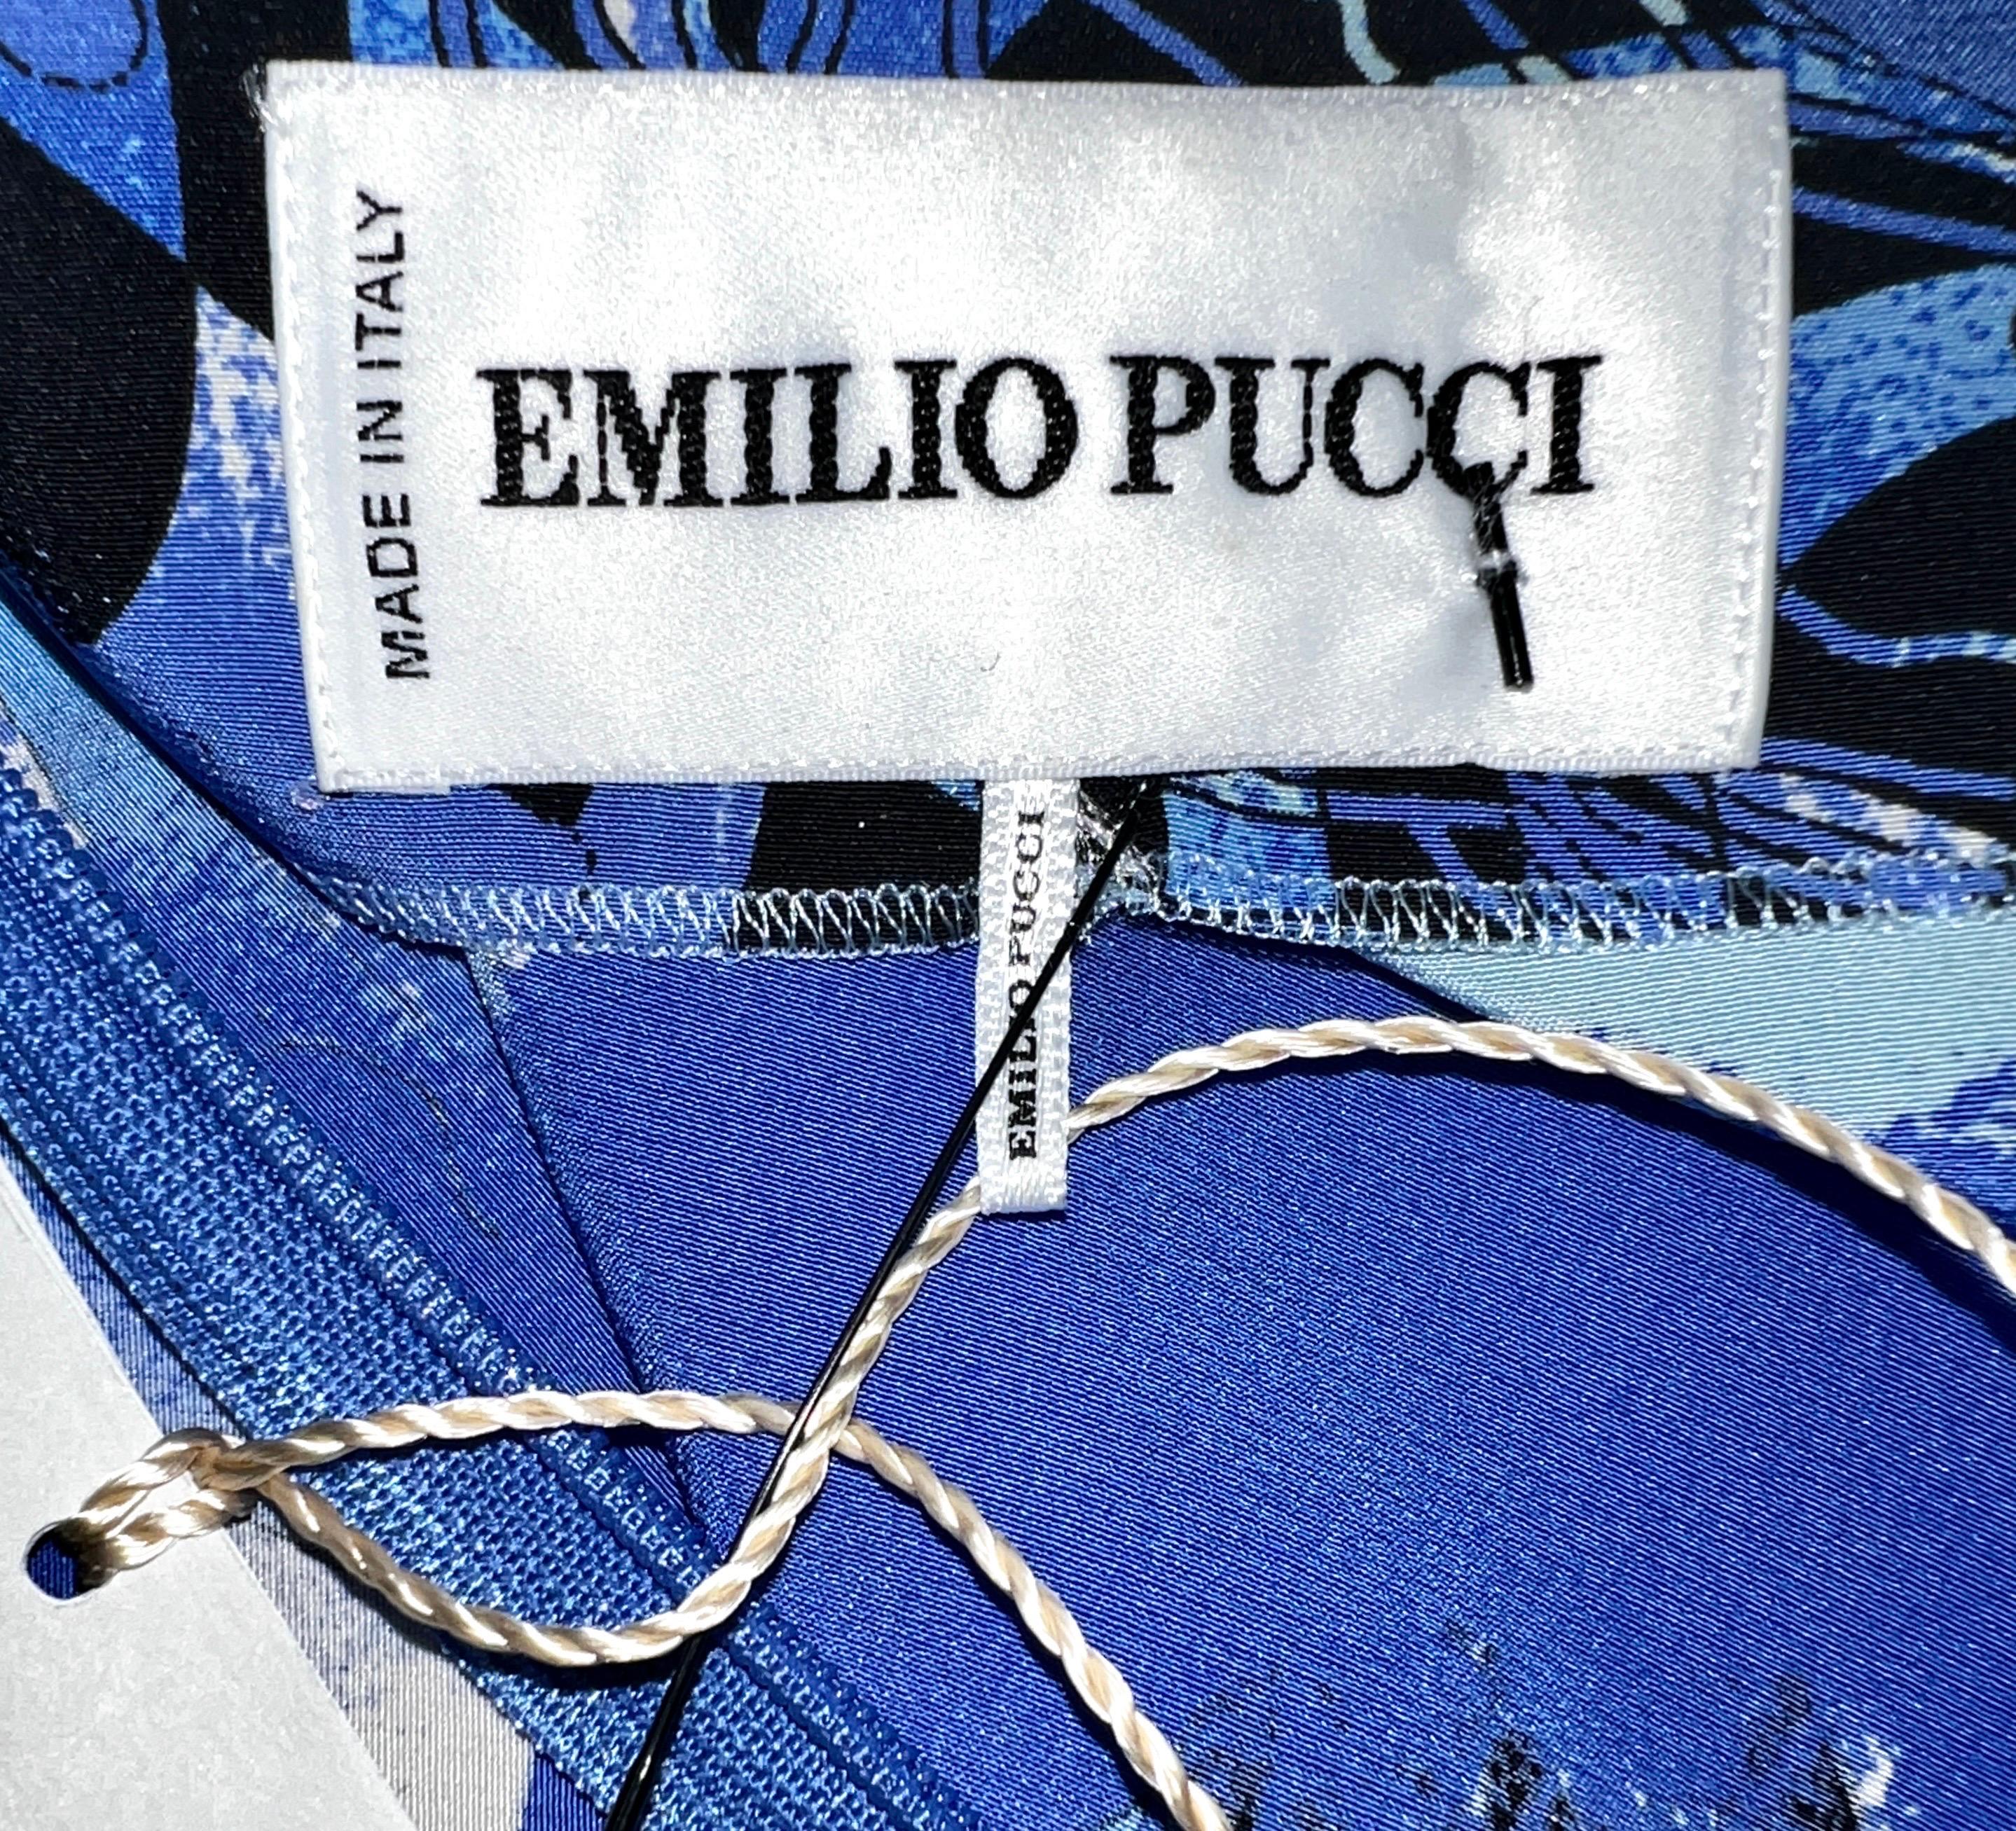 UNWORN Emilio Pucci Signature Print Faux Wrap Dress with Zip Details 44 5